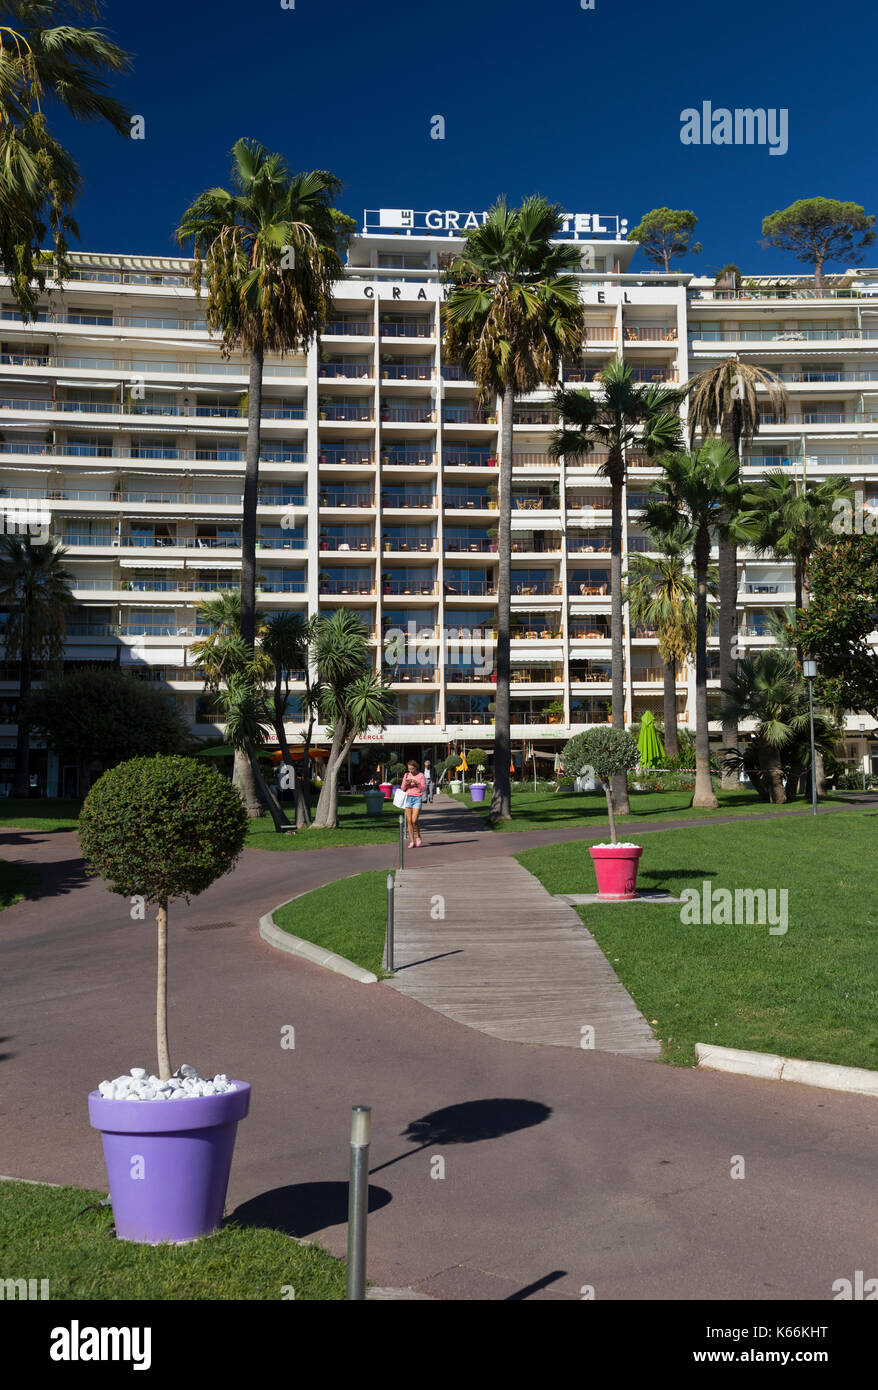 Ingresso al Grand Hotel, Boulevard de la Croisette, Cannes, Francia Foto Stock